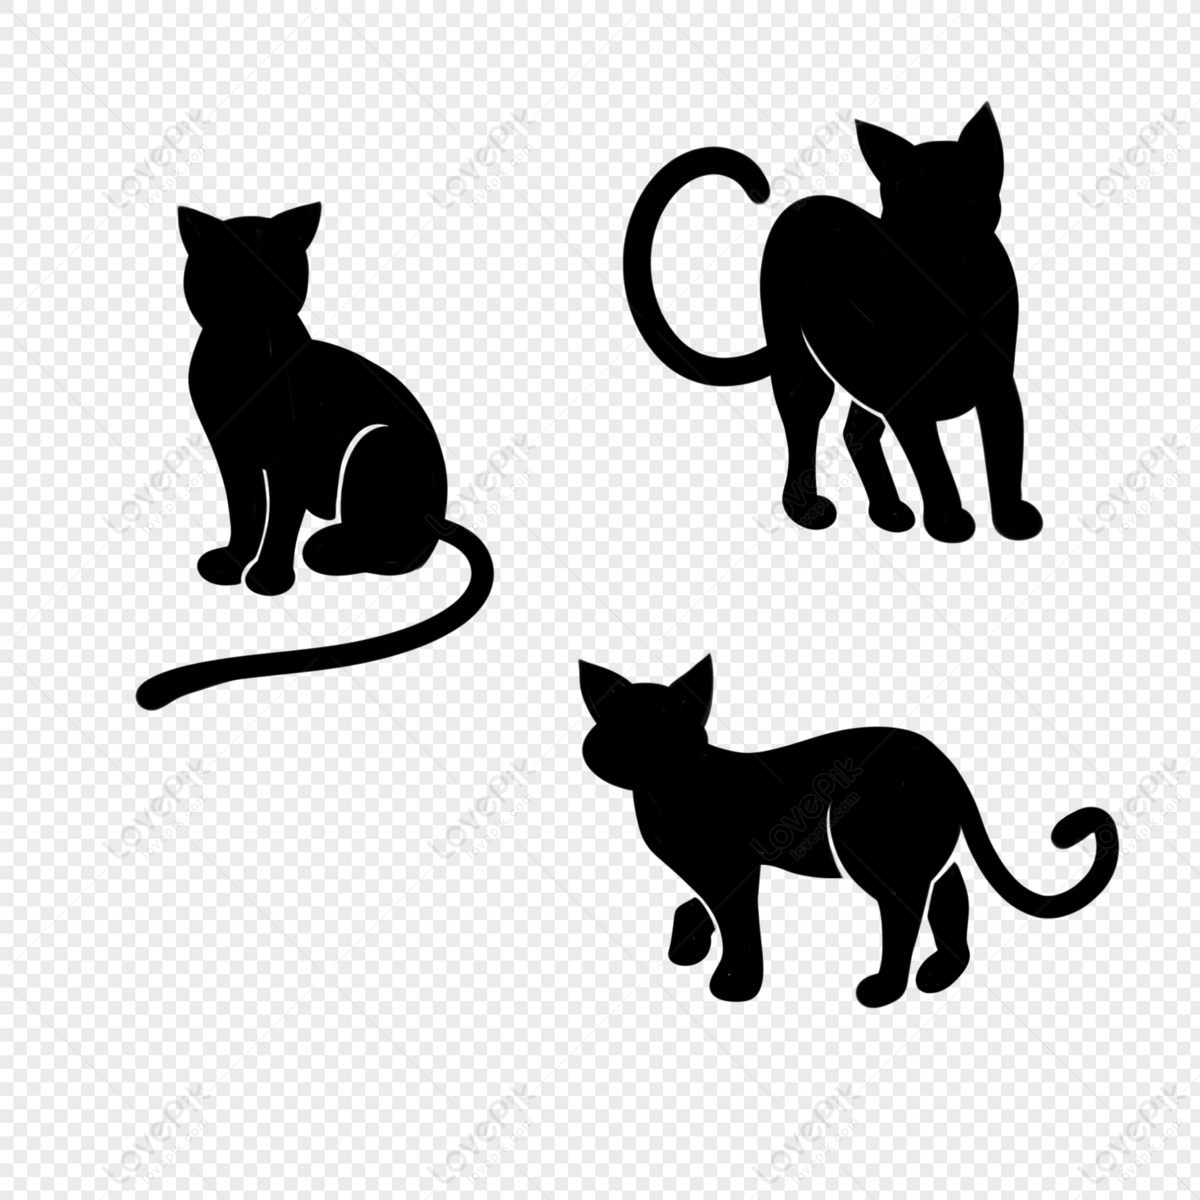 Mèo Ngồi Và Đứng PNG là những hình ảnh về mèo với độ phân giải cao và có thể sử dụng trong các thiết kế. Hãy xem để chọn lựa các hình ảnh ưng ý nhất.